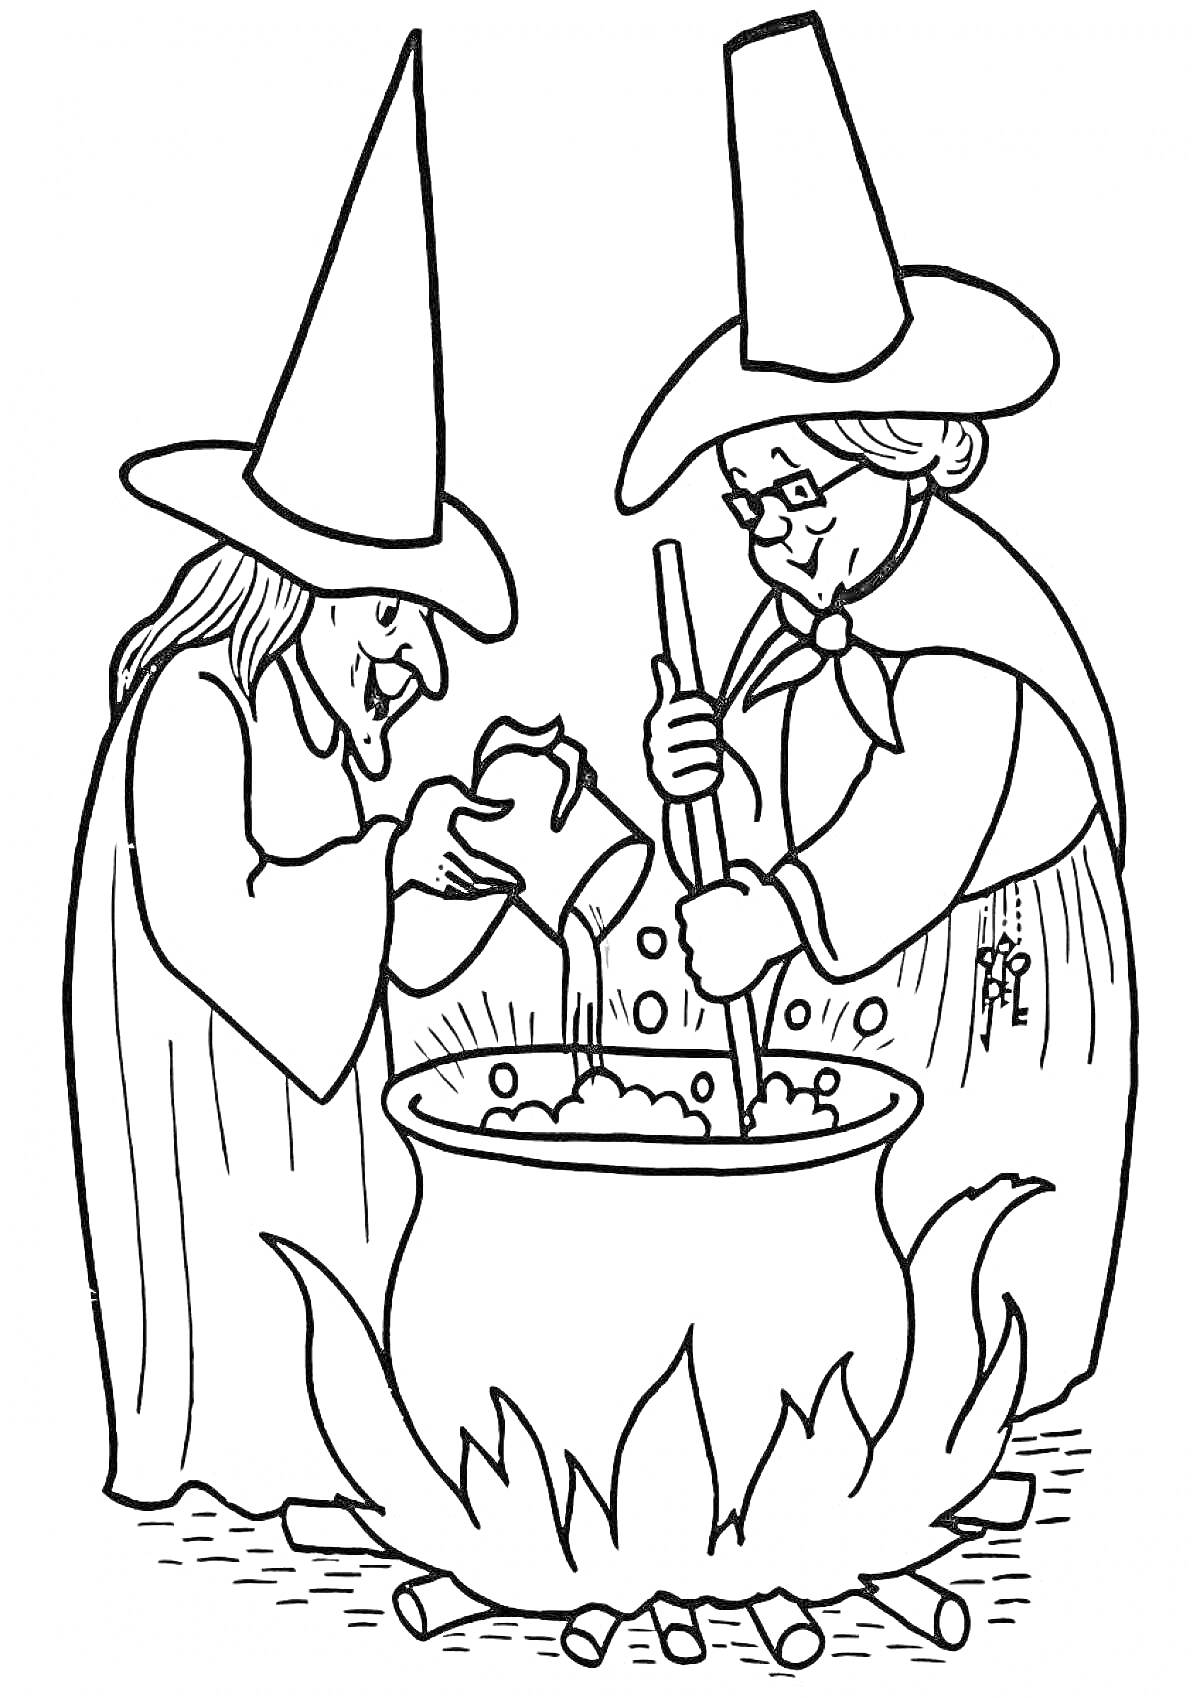 Раскраска Две ведьмы у котла на огне, одна из ведьм заливает жидкость в котёл, вторая ведьма помешивает содержимое